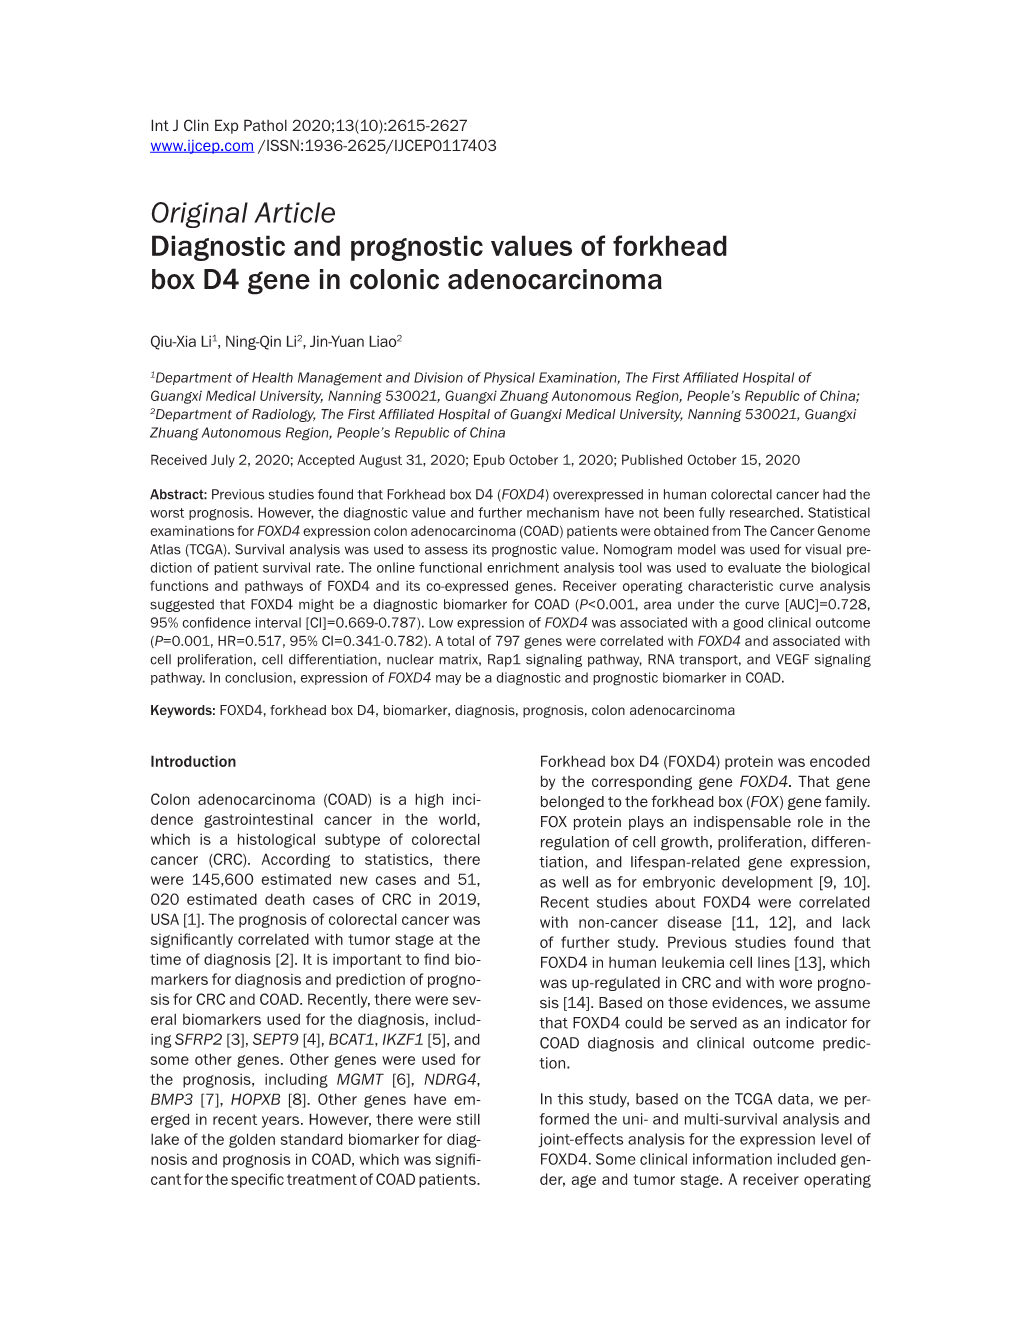 Original Article Diagnostic and Prognostic Values of Forkhead Box D4 Gene in Colonic Adenocarcinoma